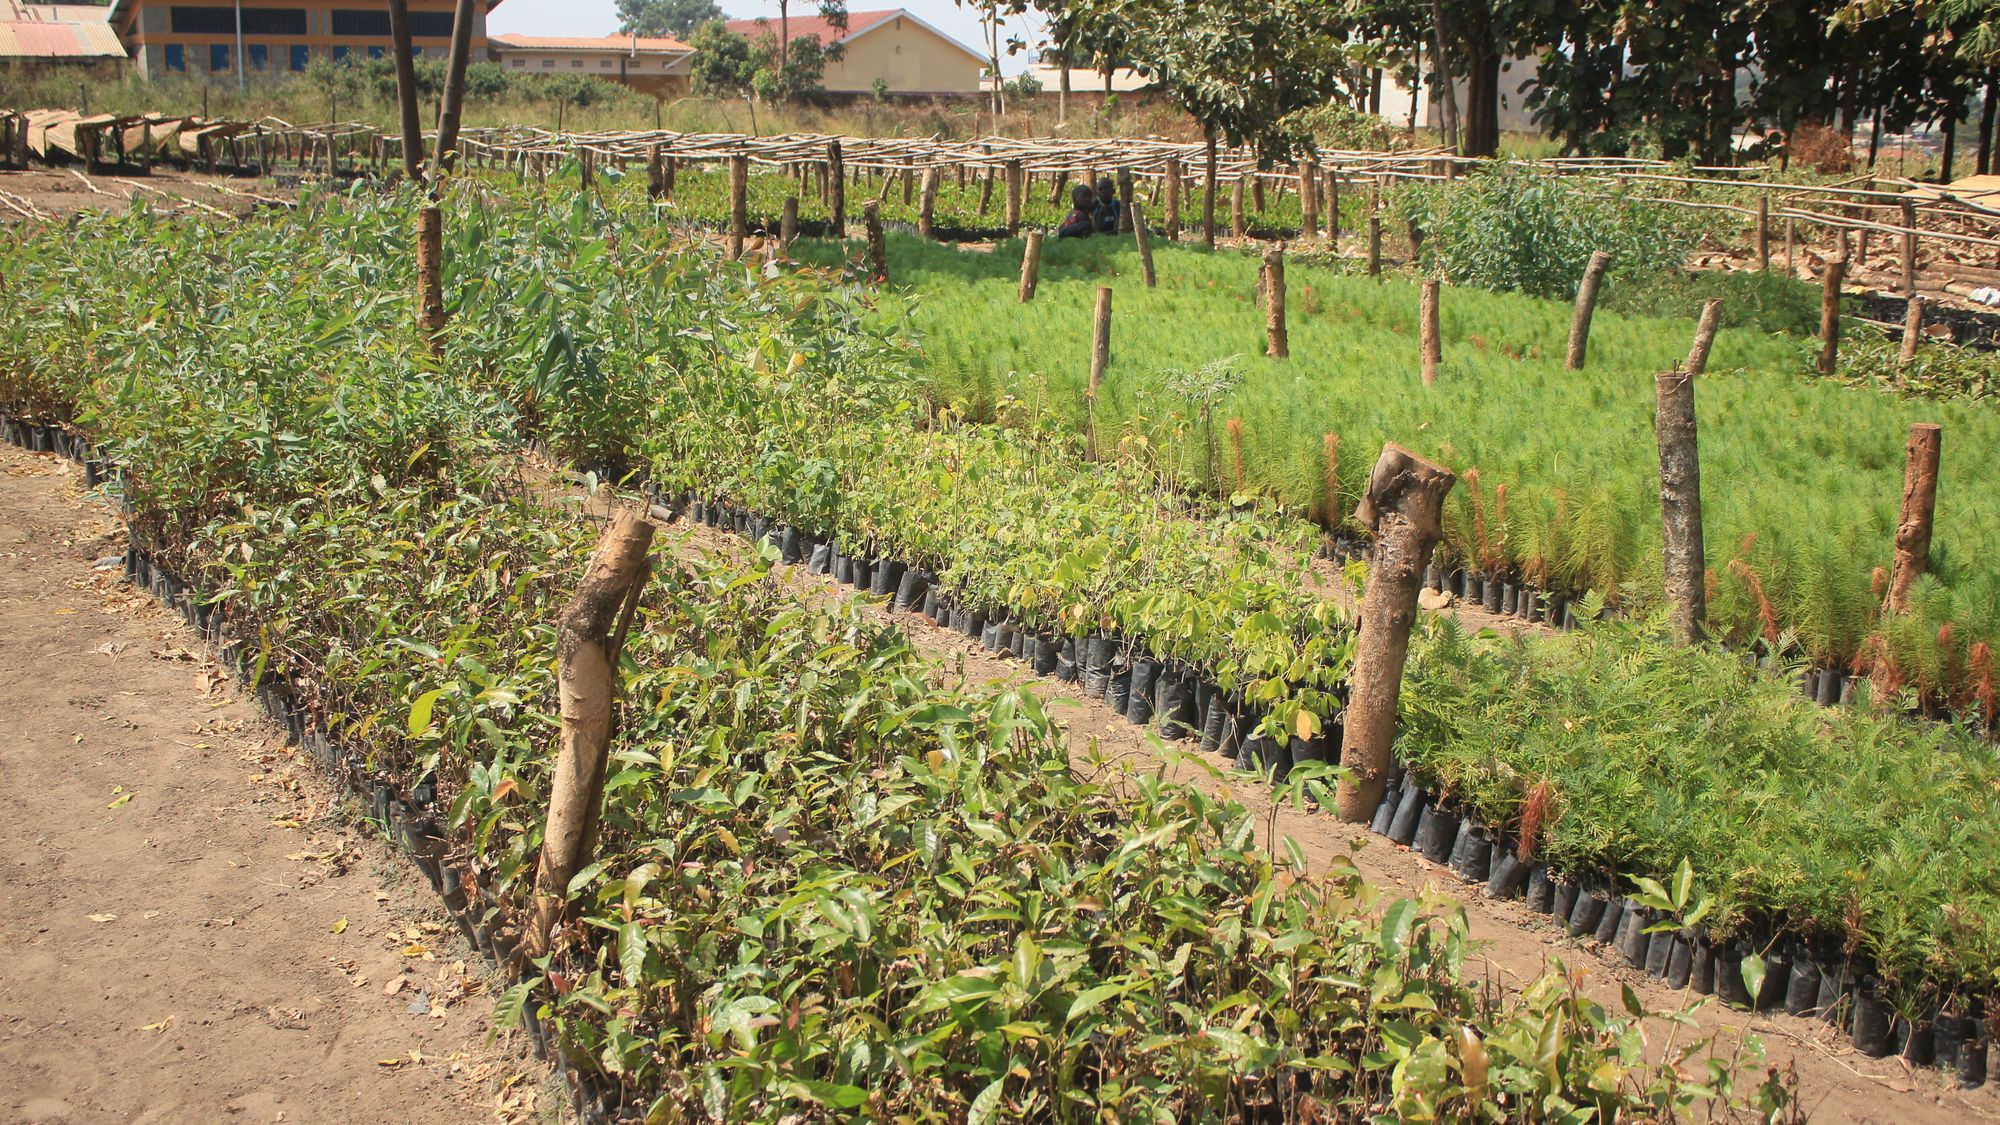 Efforts by NFA, Gulu to raise tree seedlings to restore the depleted trees. - iRoom